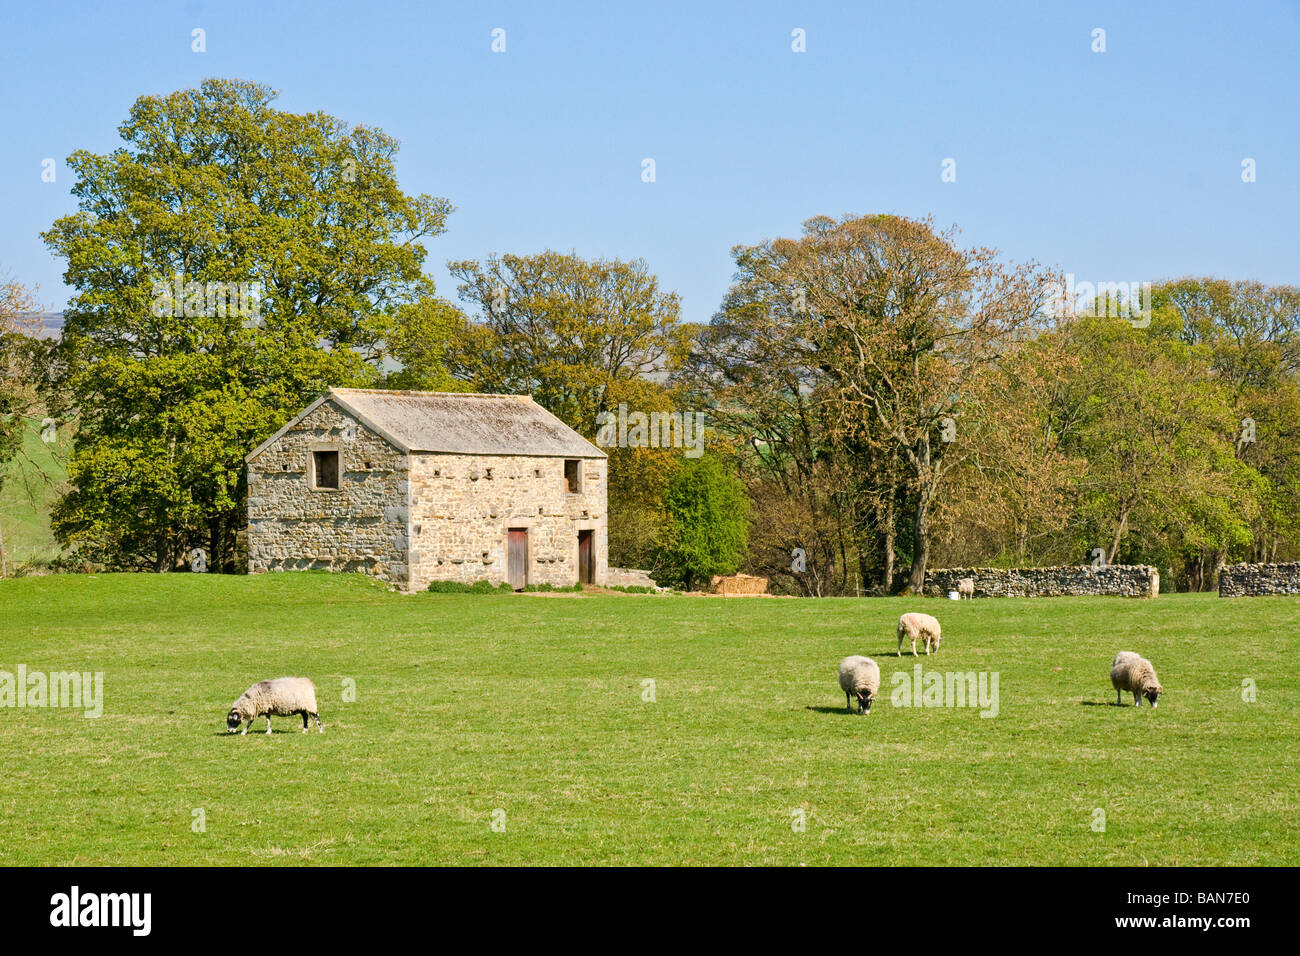 Ovine et de barn ar Aysgarth dans Wensleydale, Yorkshire du Nord Banque D'Images